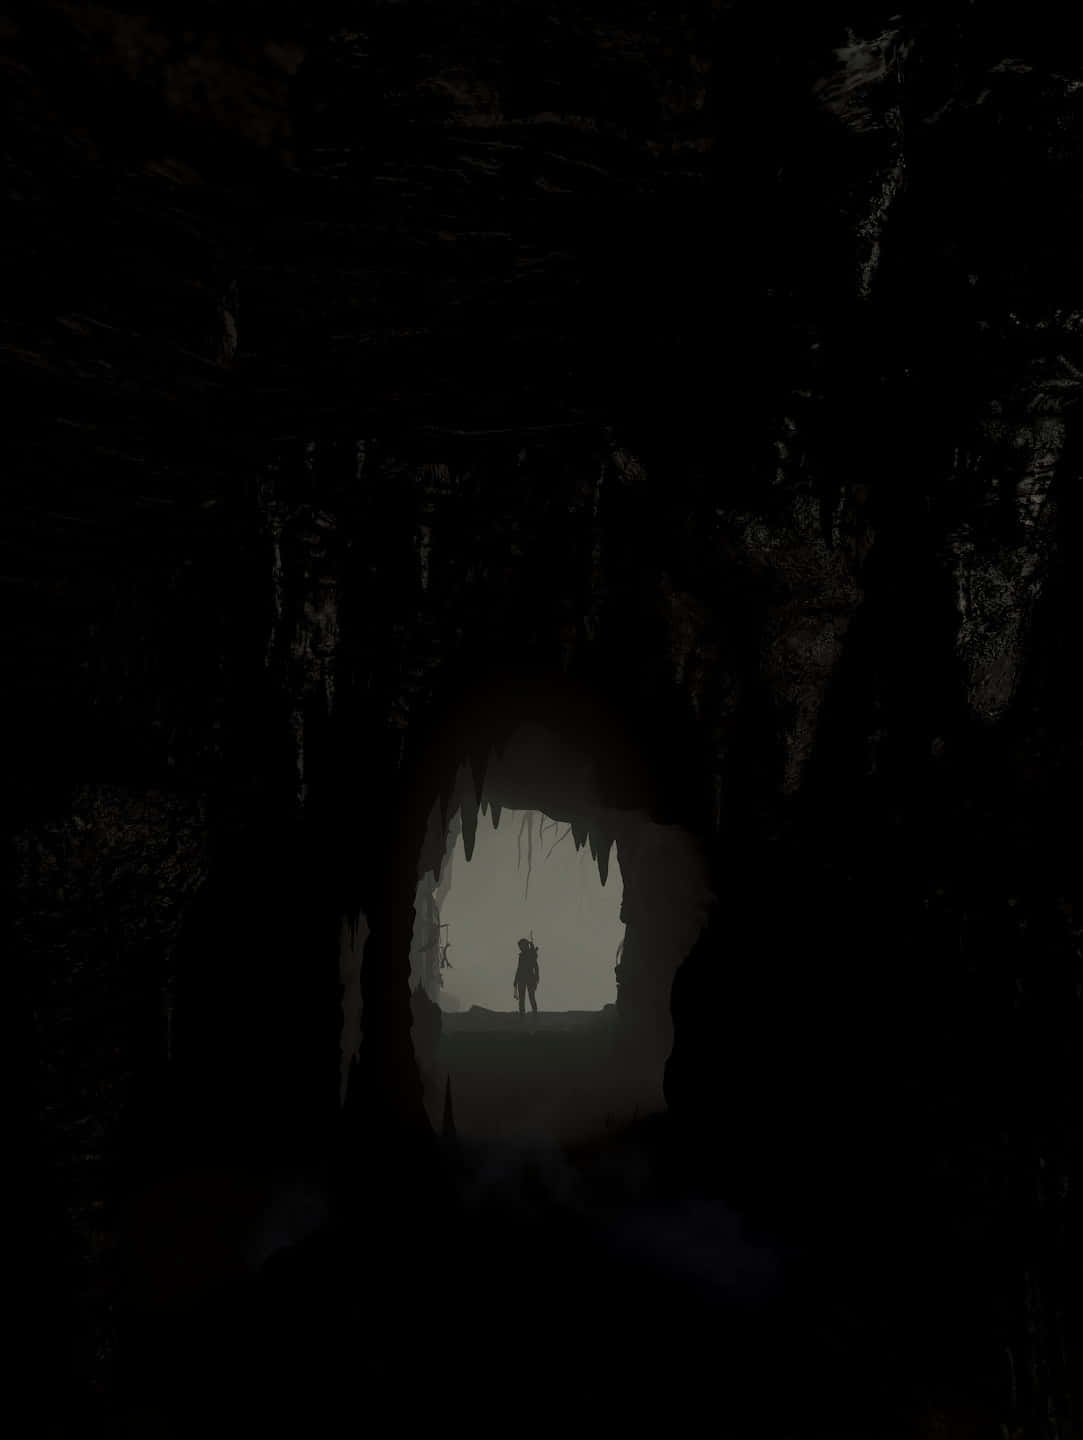 Androidbakgrundsbild För Rise Of The Tomb Raider Med Grottan Som Tema.